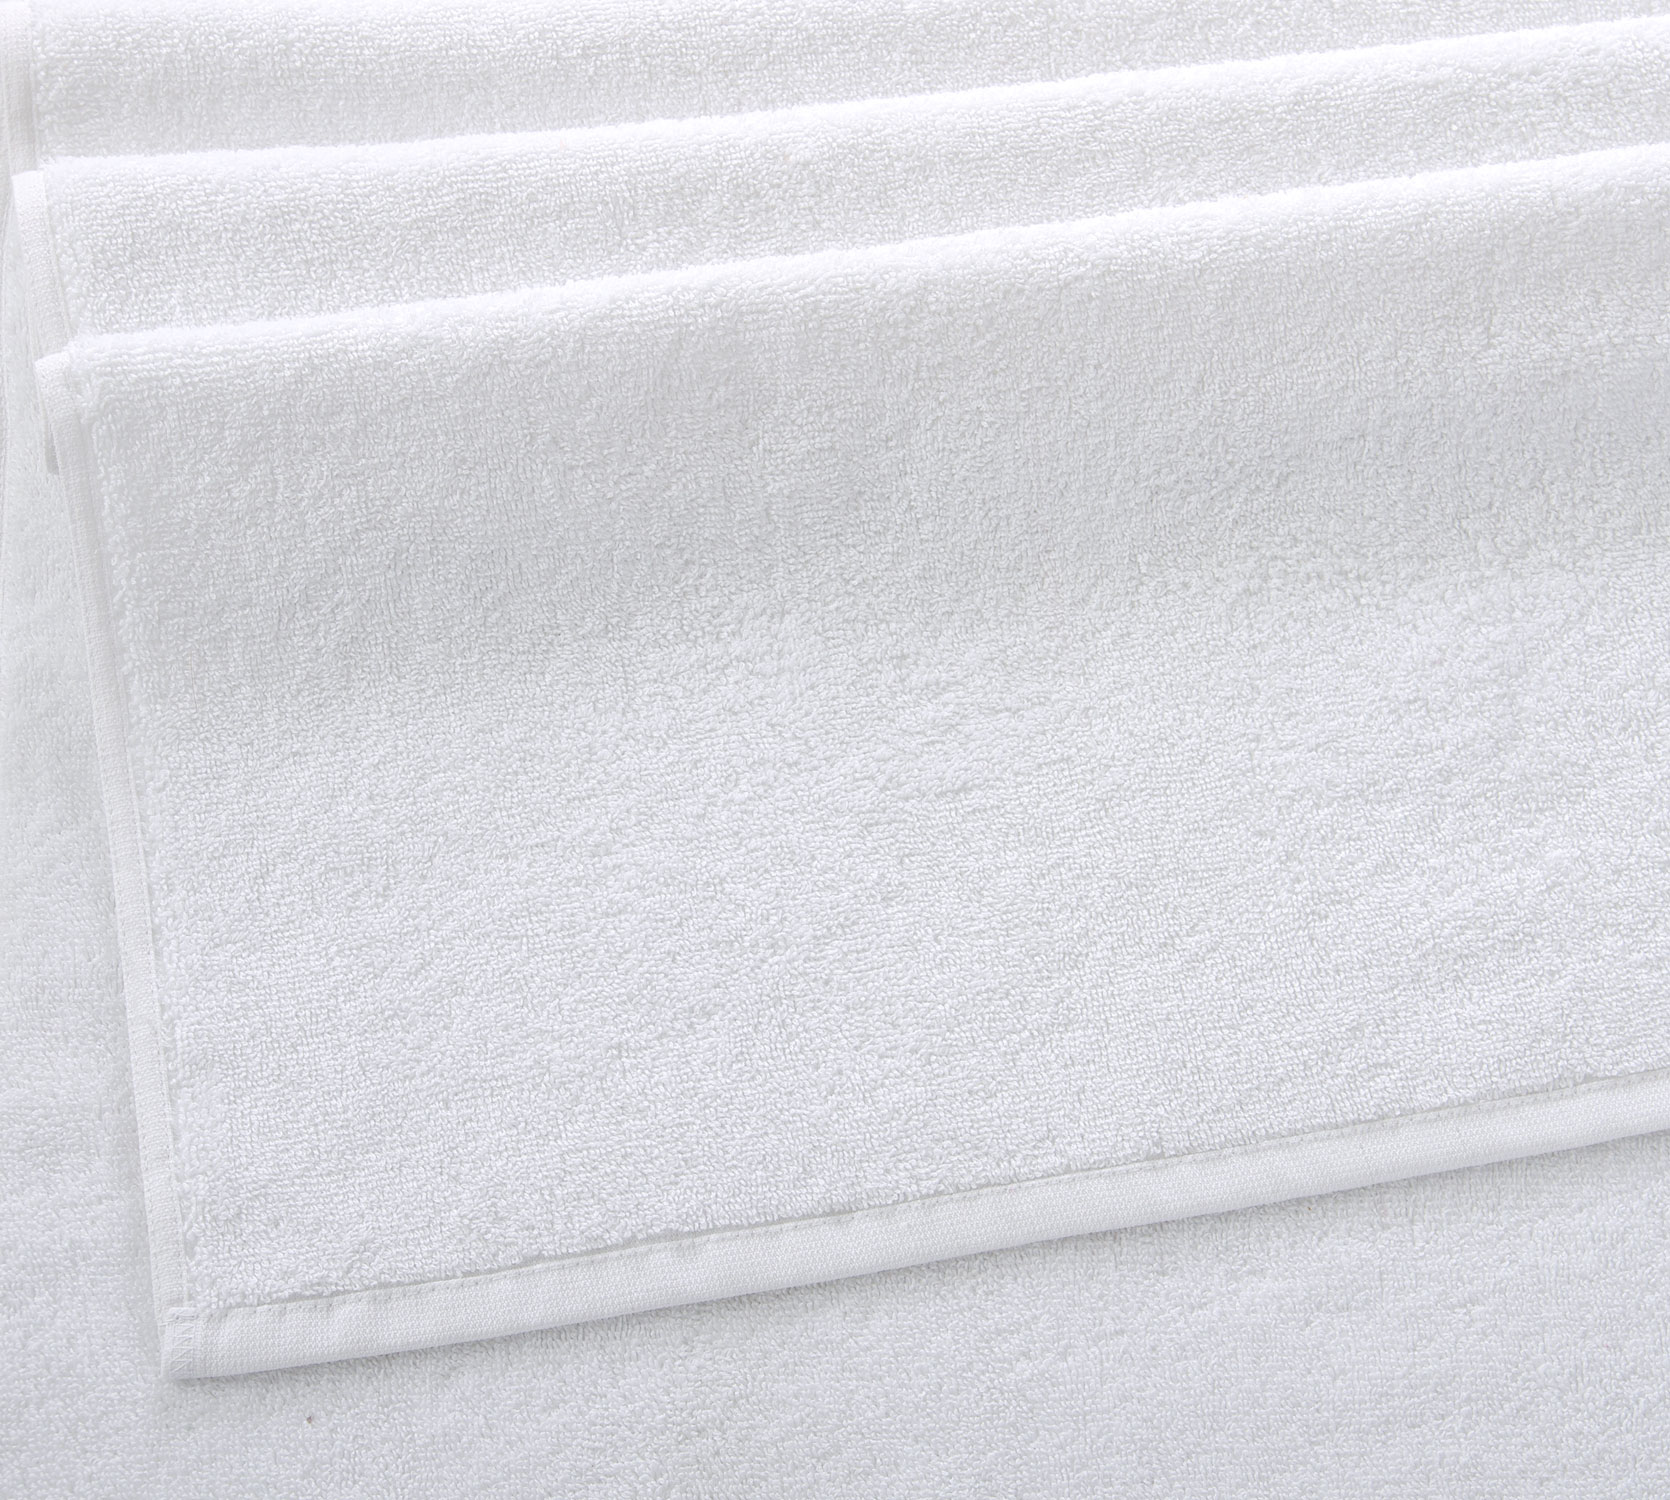 Постельное белье Махровое полотенце для рук и лица 50х70, Белый лотос фото